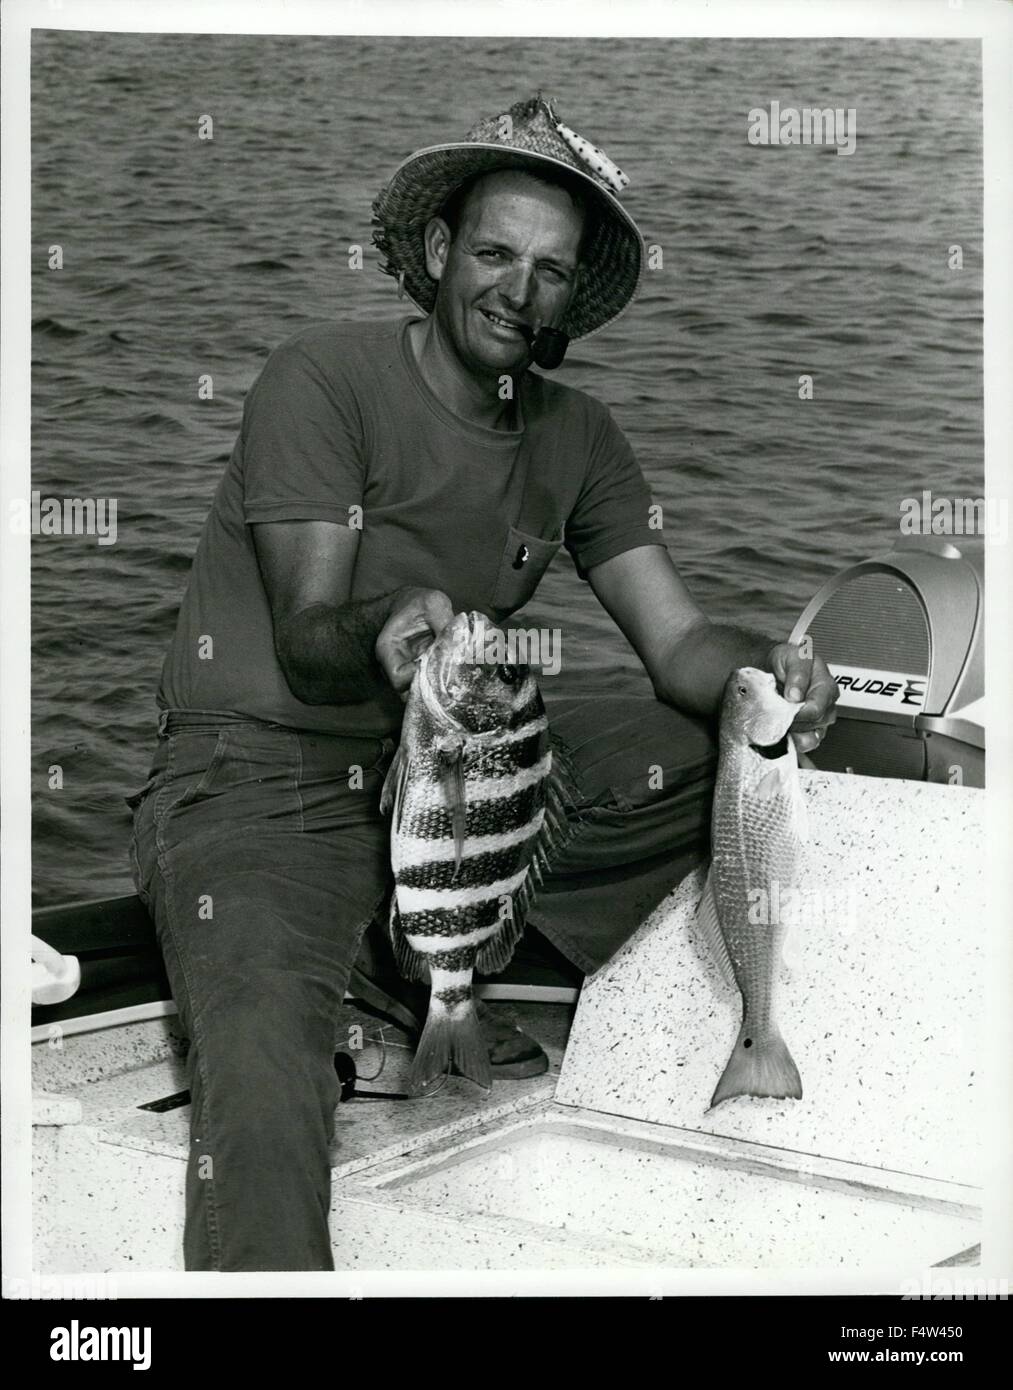 1962 - Miami Herald editor esterno Vic Dunaway, uno della Florida il più esperto dei pescatori, è un vero fan di sheepshead pesca, e quando la pesca sportiva per i rigatori, solitamente tira in un scorfano o due. © Keystone Pictures USA/ZUMAPRESS.com/Alamy Live News Foto Stock